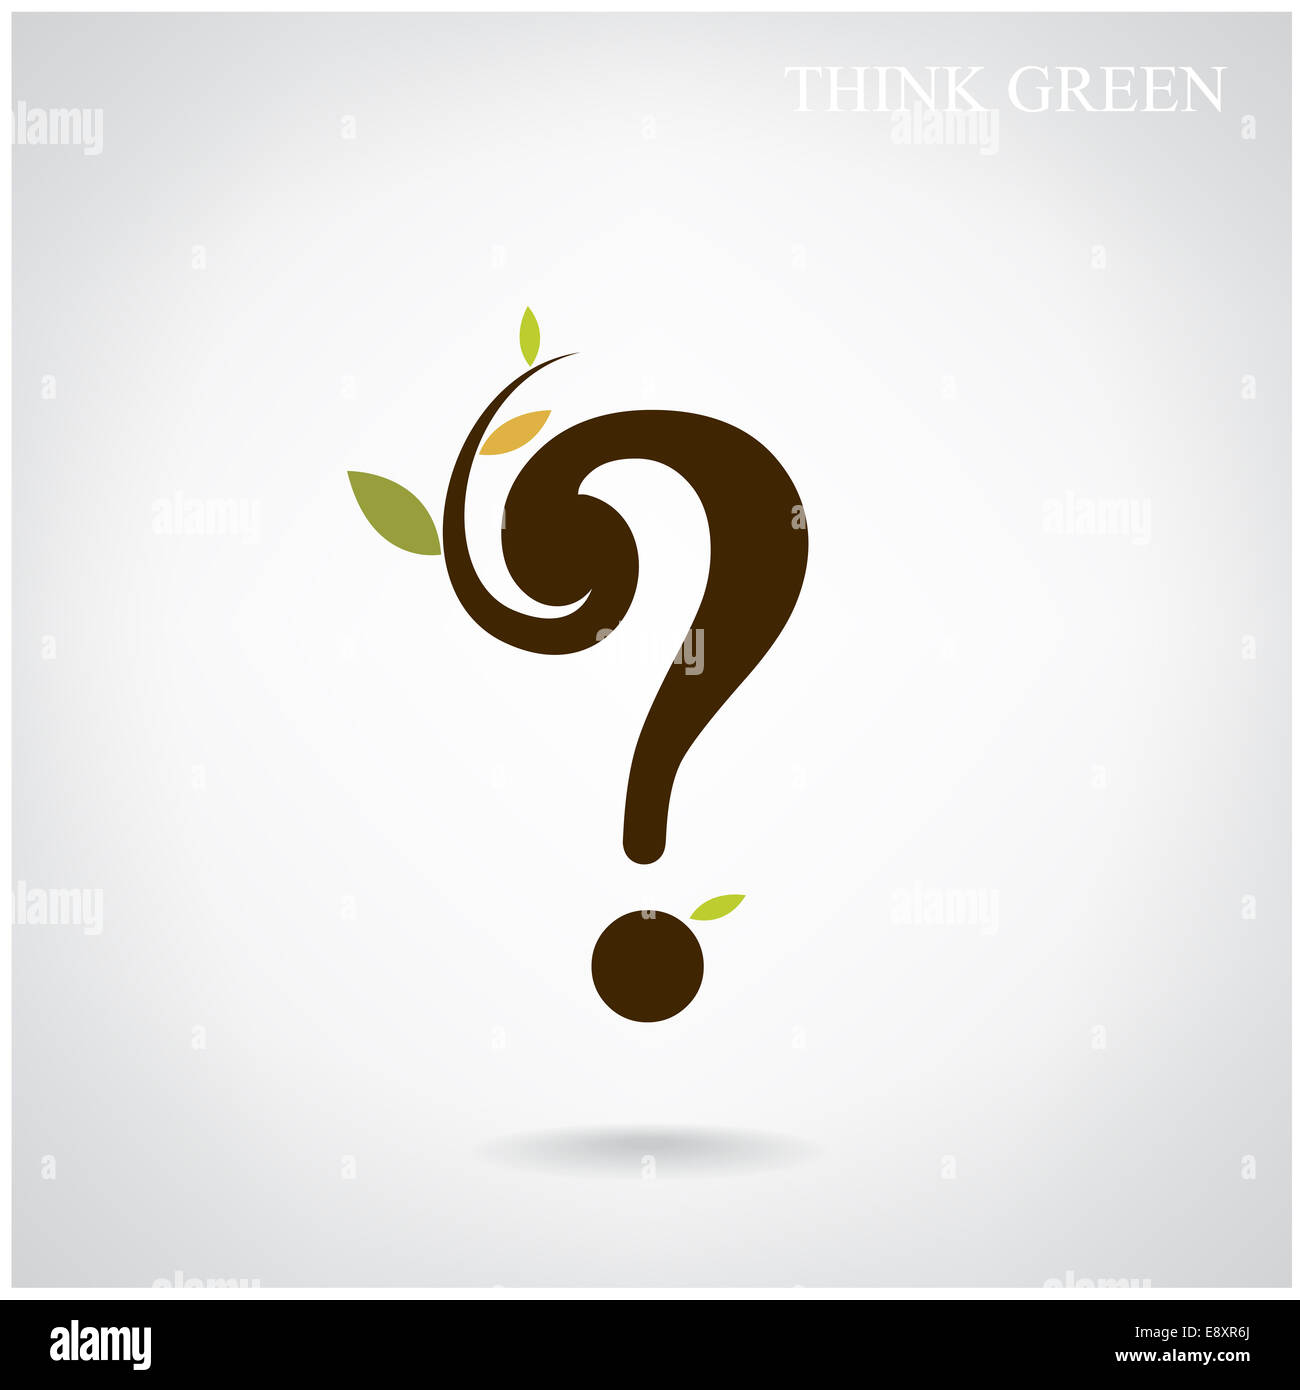 Fragezeichen und denken grüne Konzept. Stockfoto